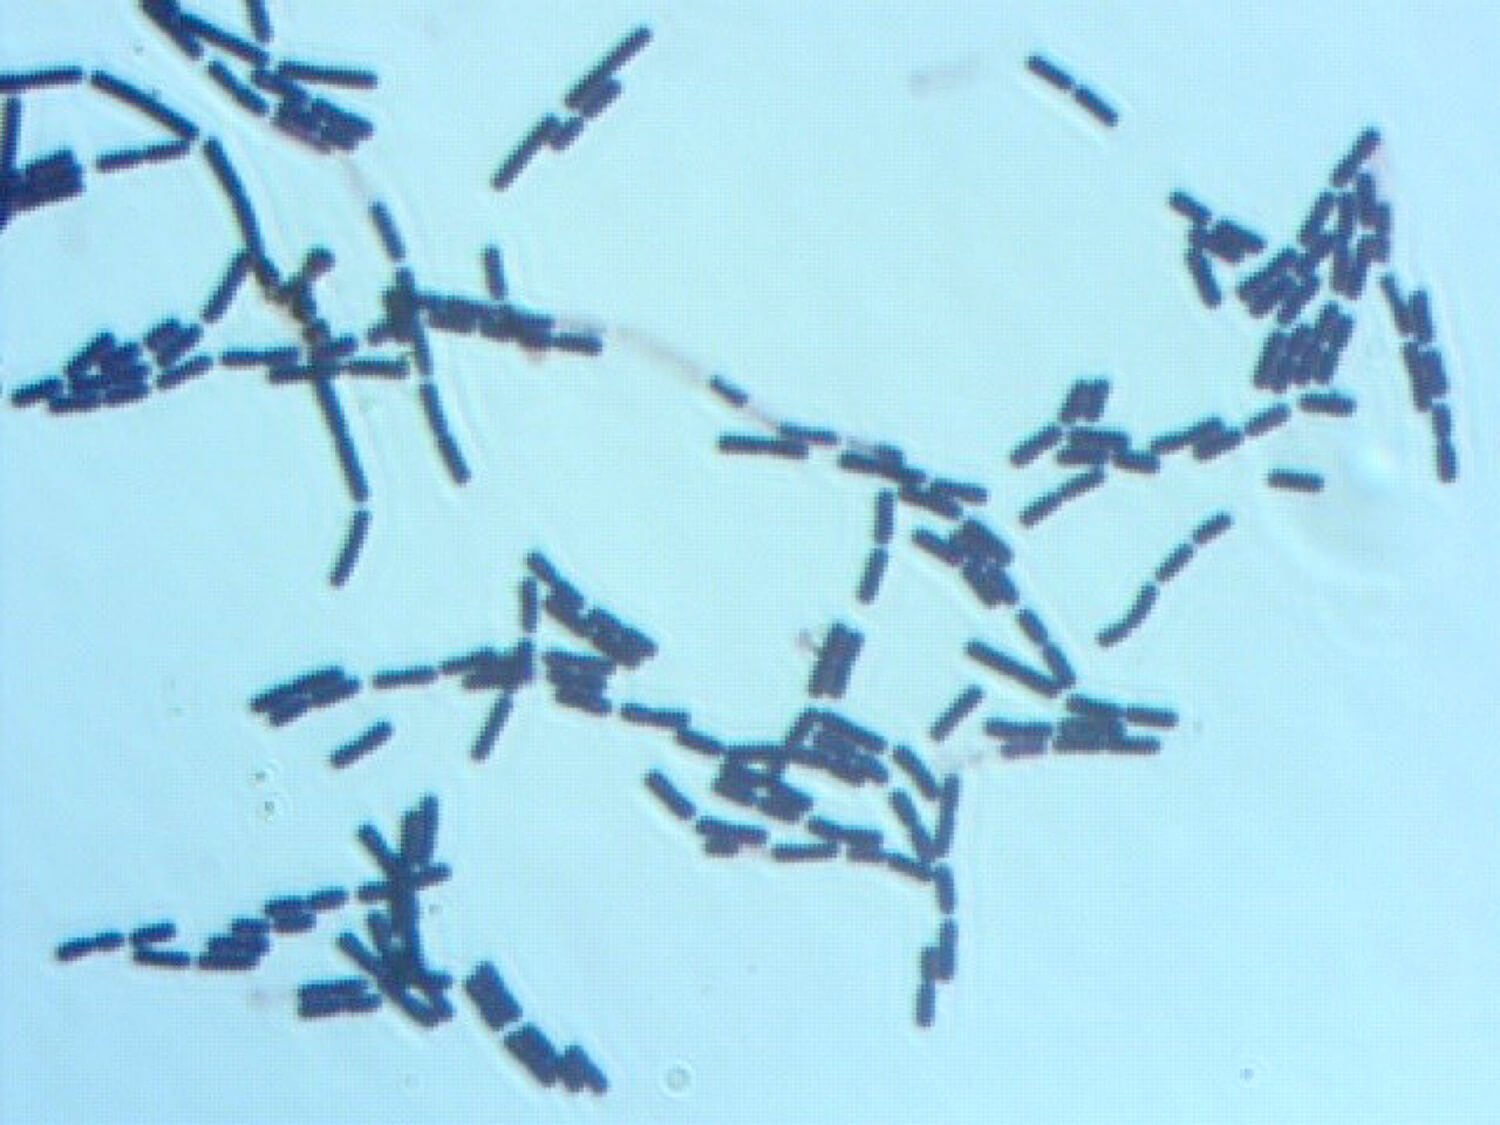 széna bacillus saprotroph vagy parazita